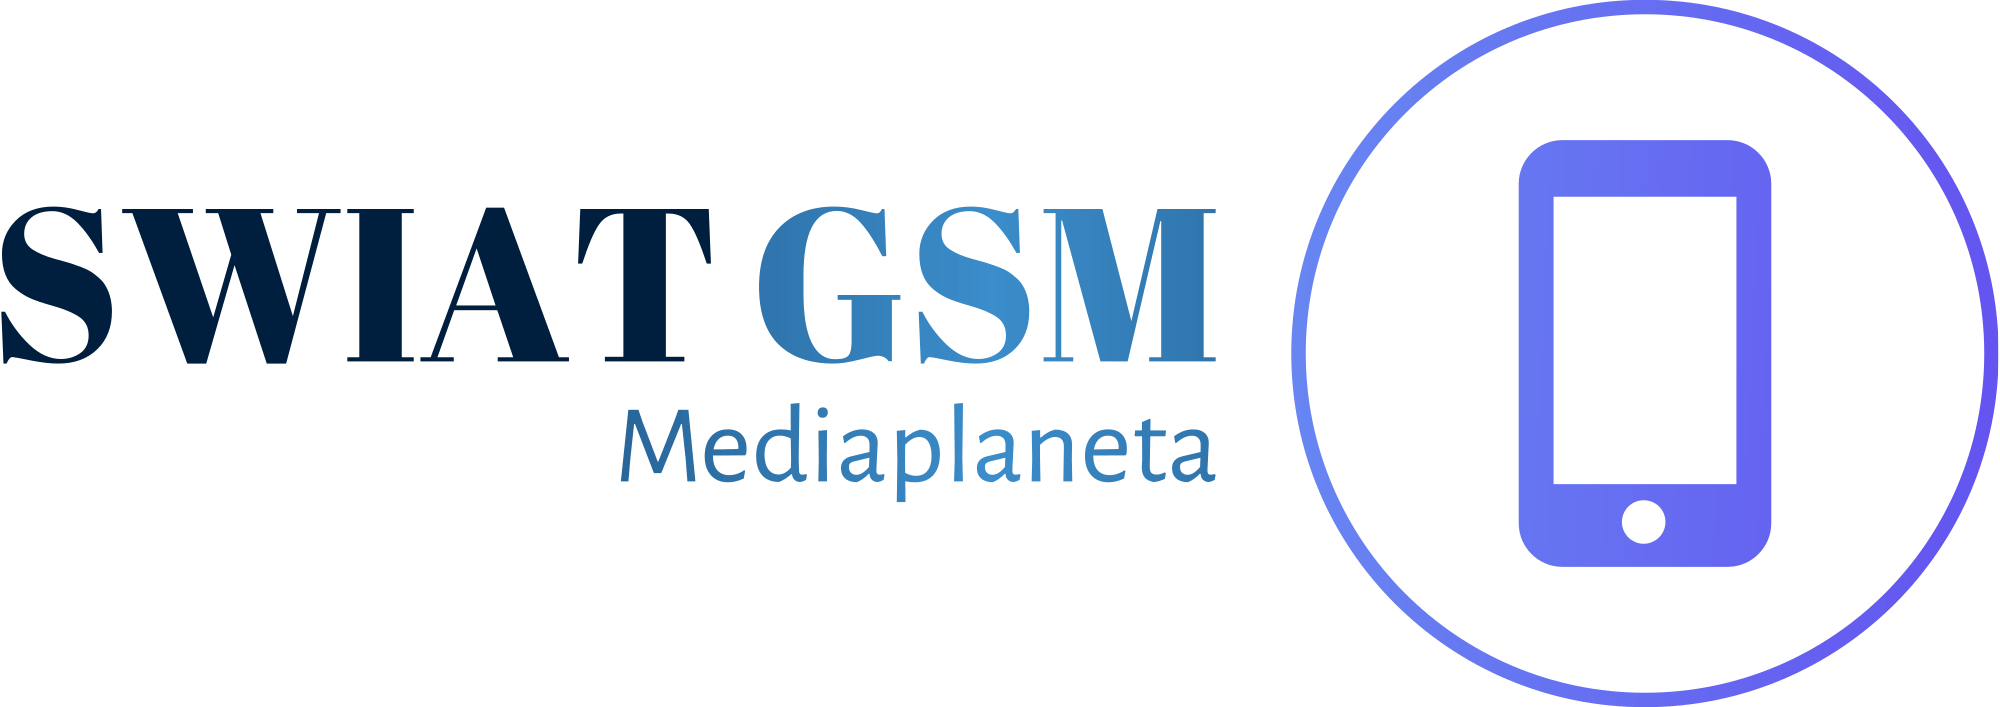 Świat GSM - Mediaplaneta.pl